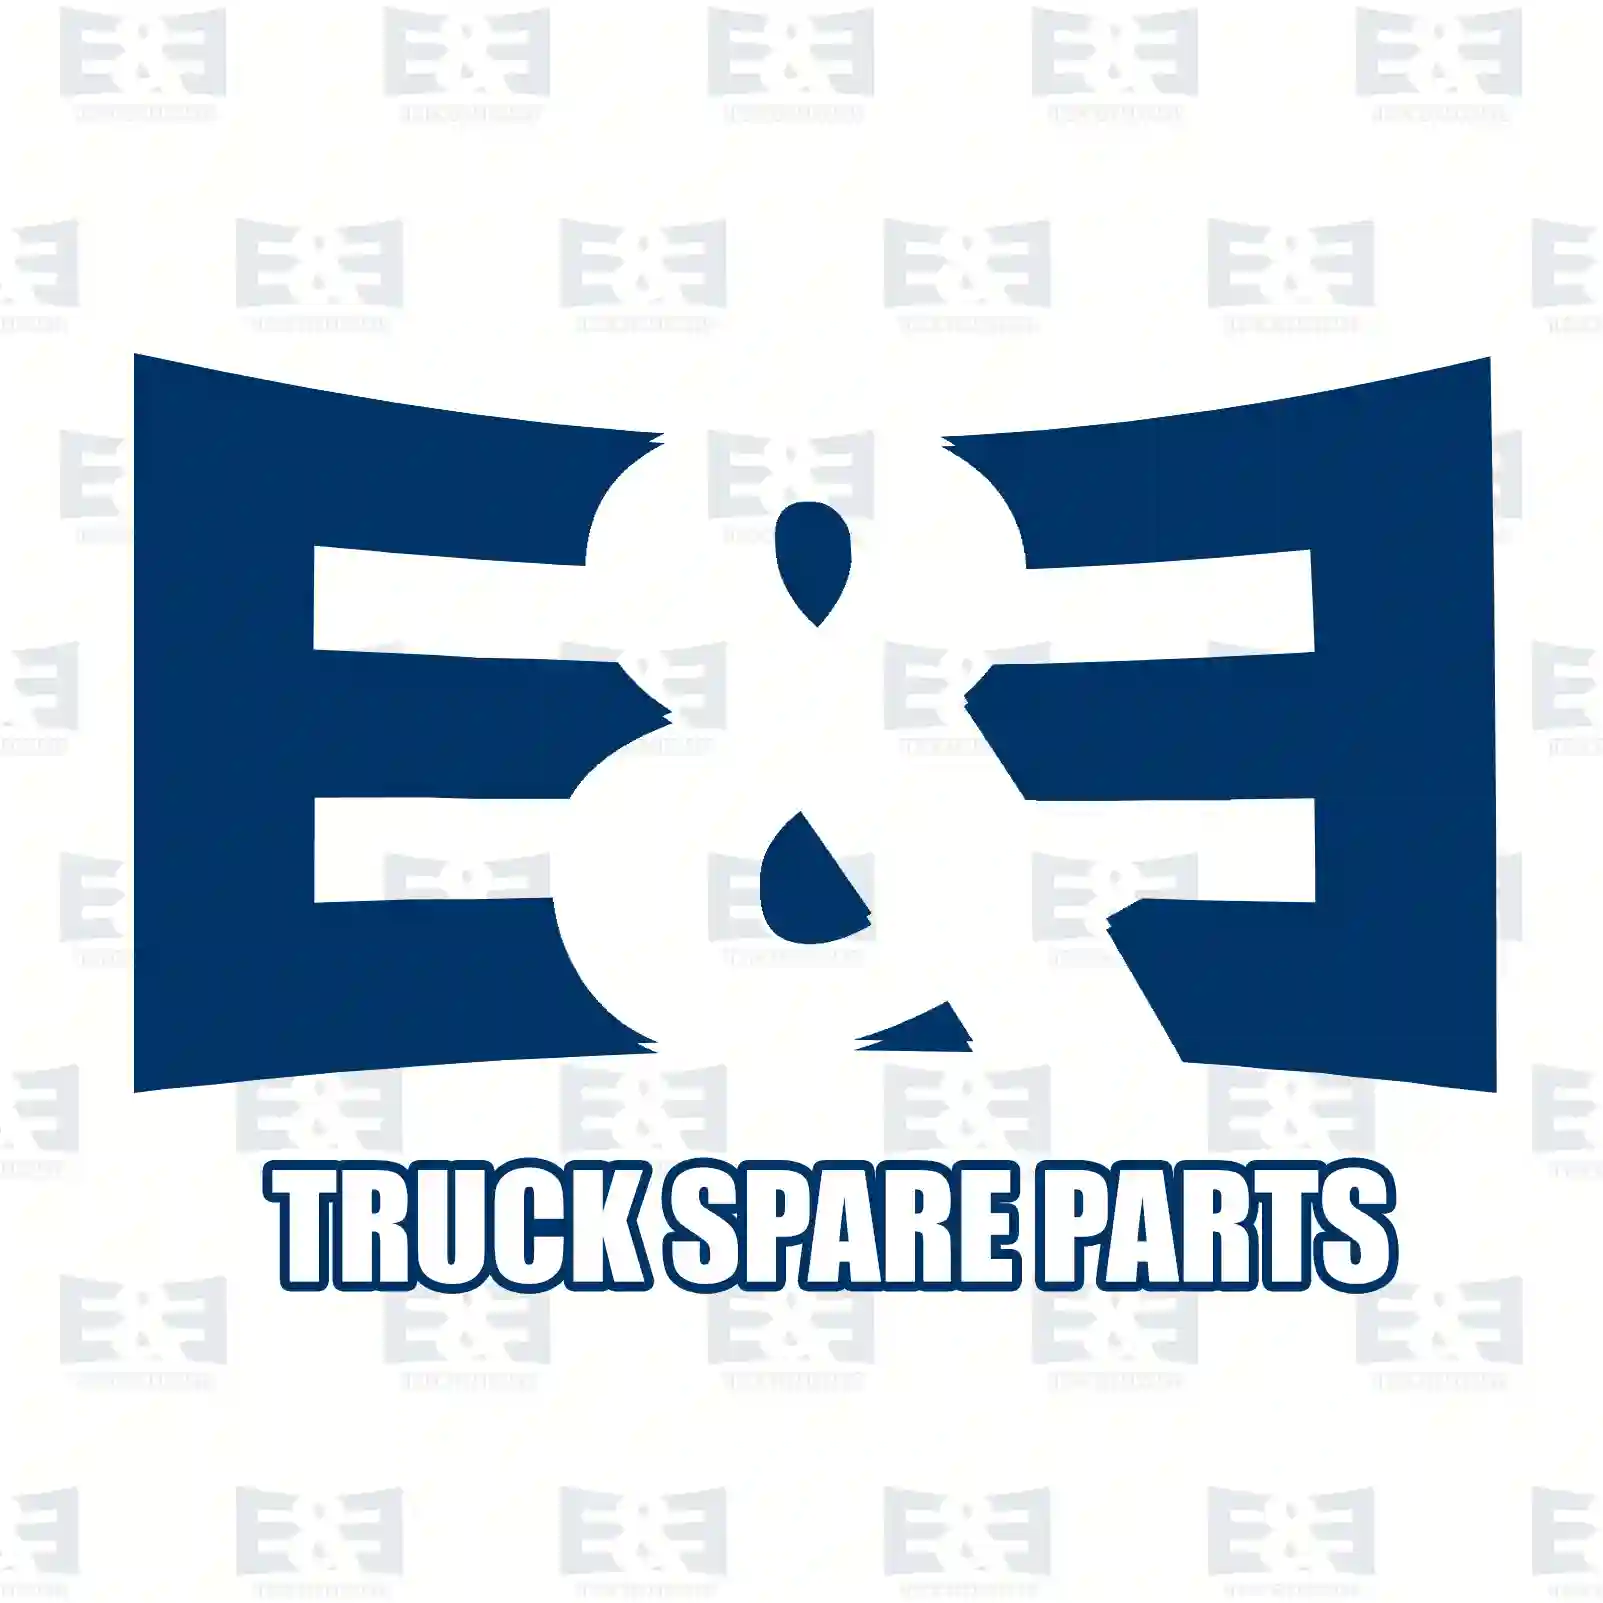 Repair kit, cable harness, 2E2298643, 77364061S, 13248240S, 95508692S, 6845796S, 6450XRS ||  2E2298643 E&E Truck Spare Parts | Truck Spare Parts, Auotomotive Spare Parts Repair kit, cable harness, 2E2298643, 77364061S, 13248240S, 95508692S, 6845796S, 6450XRS ||  2E2298643 E&E Truck Spare Parts | Truck Spare Parts, Auotomotive Spare Parts